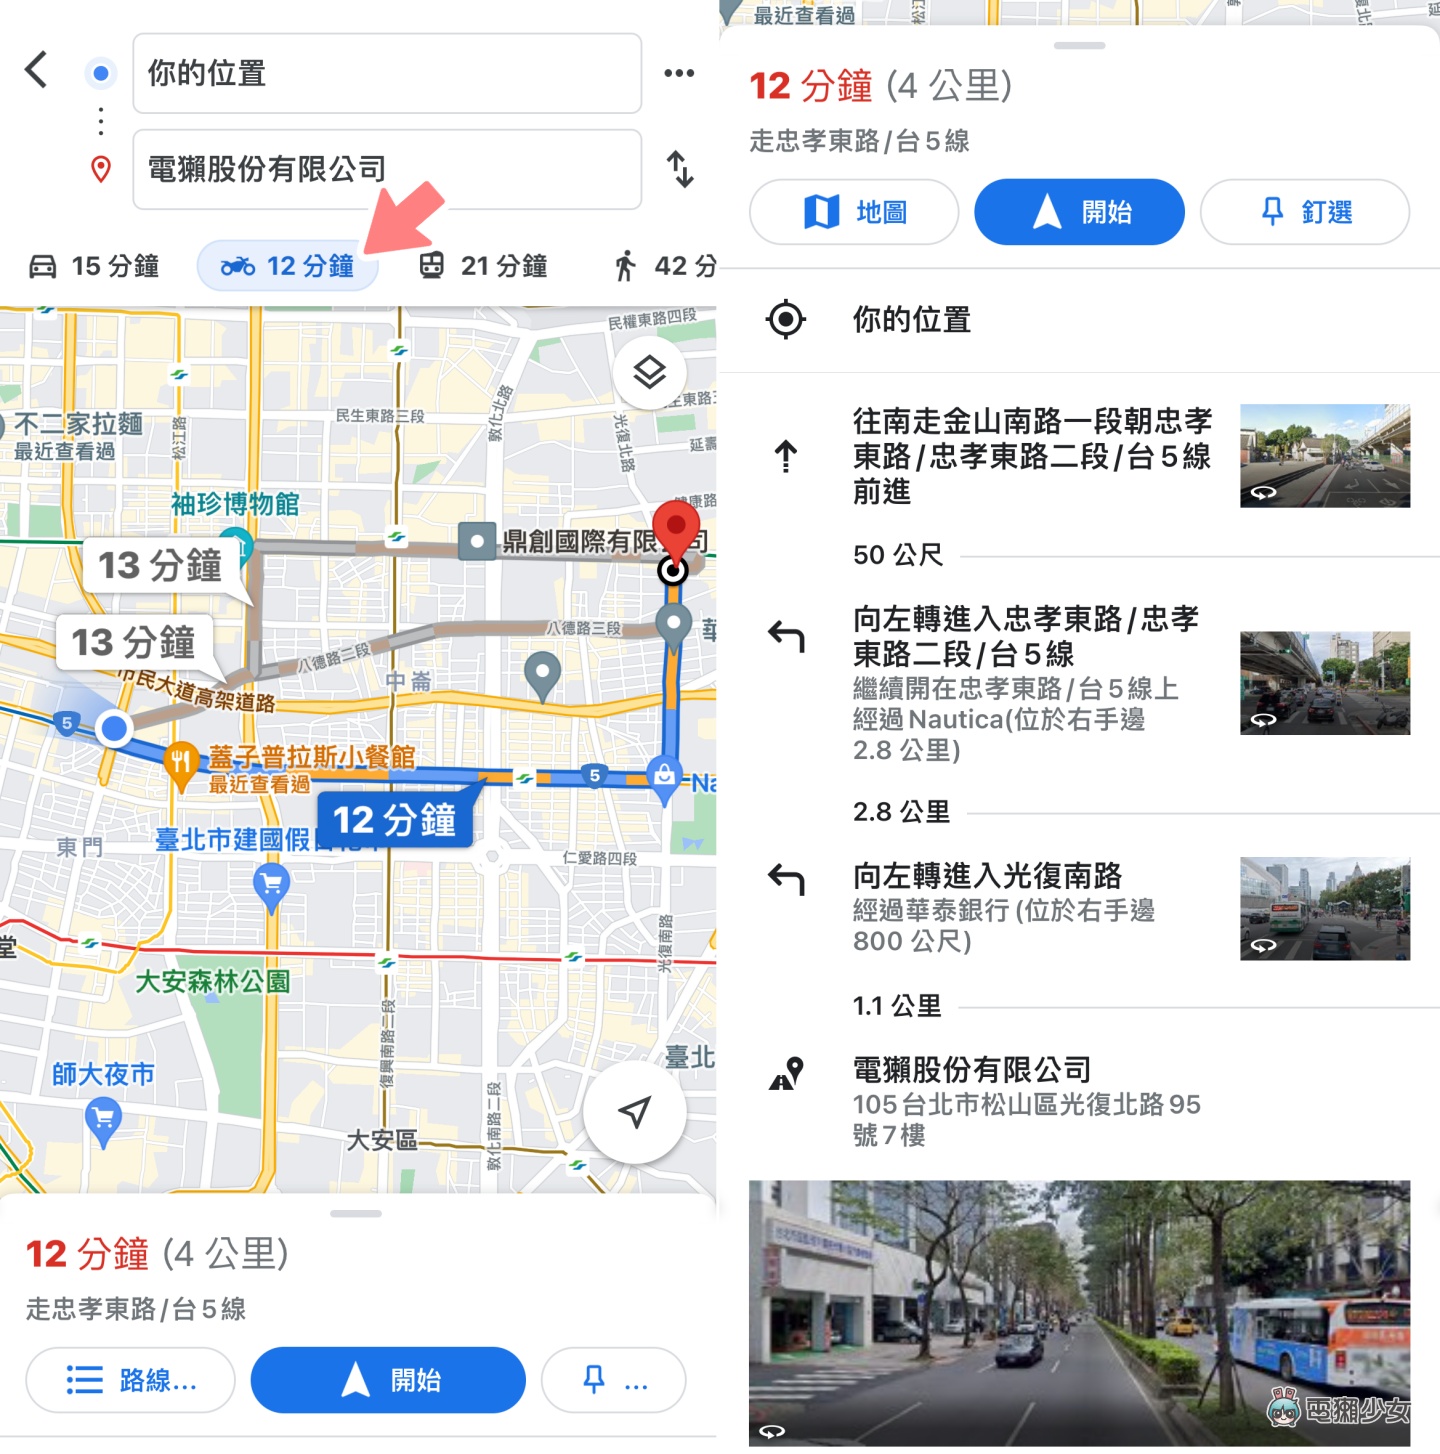 機車族必看！7 個 Google Maps 實用小技巧：路線選項、停車註記、用實景功能重新校正